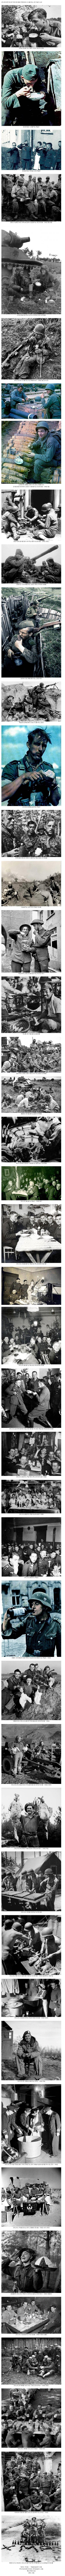 2차대전 병사들의 식사 시간